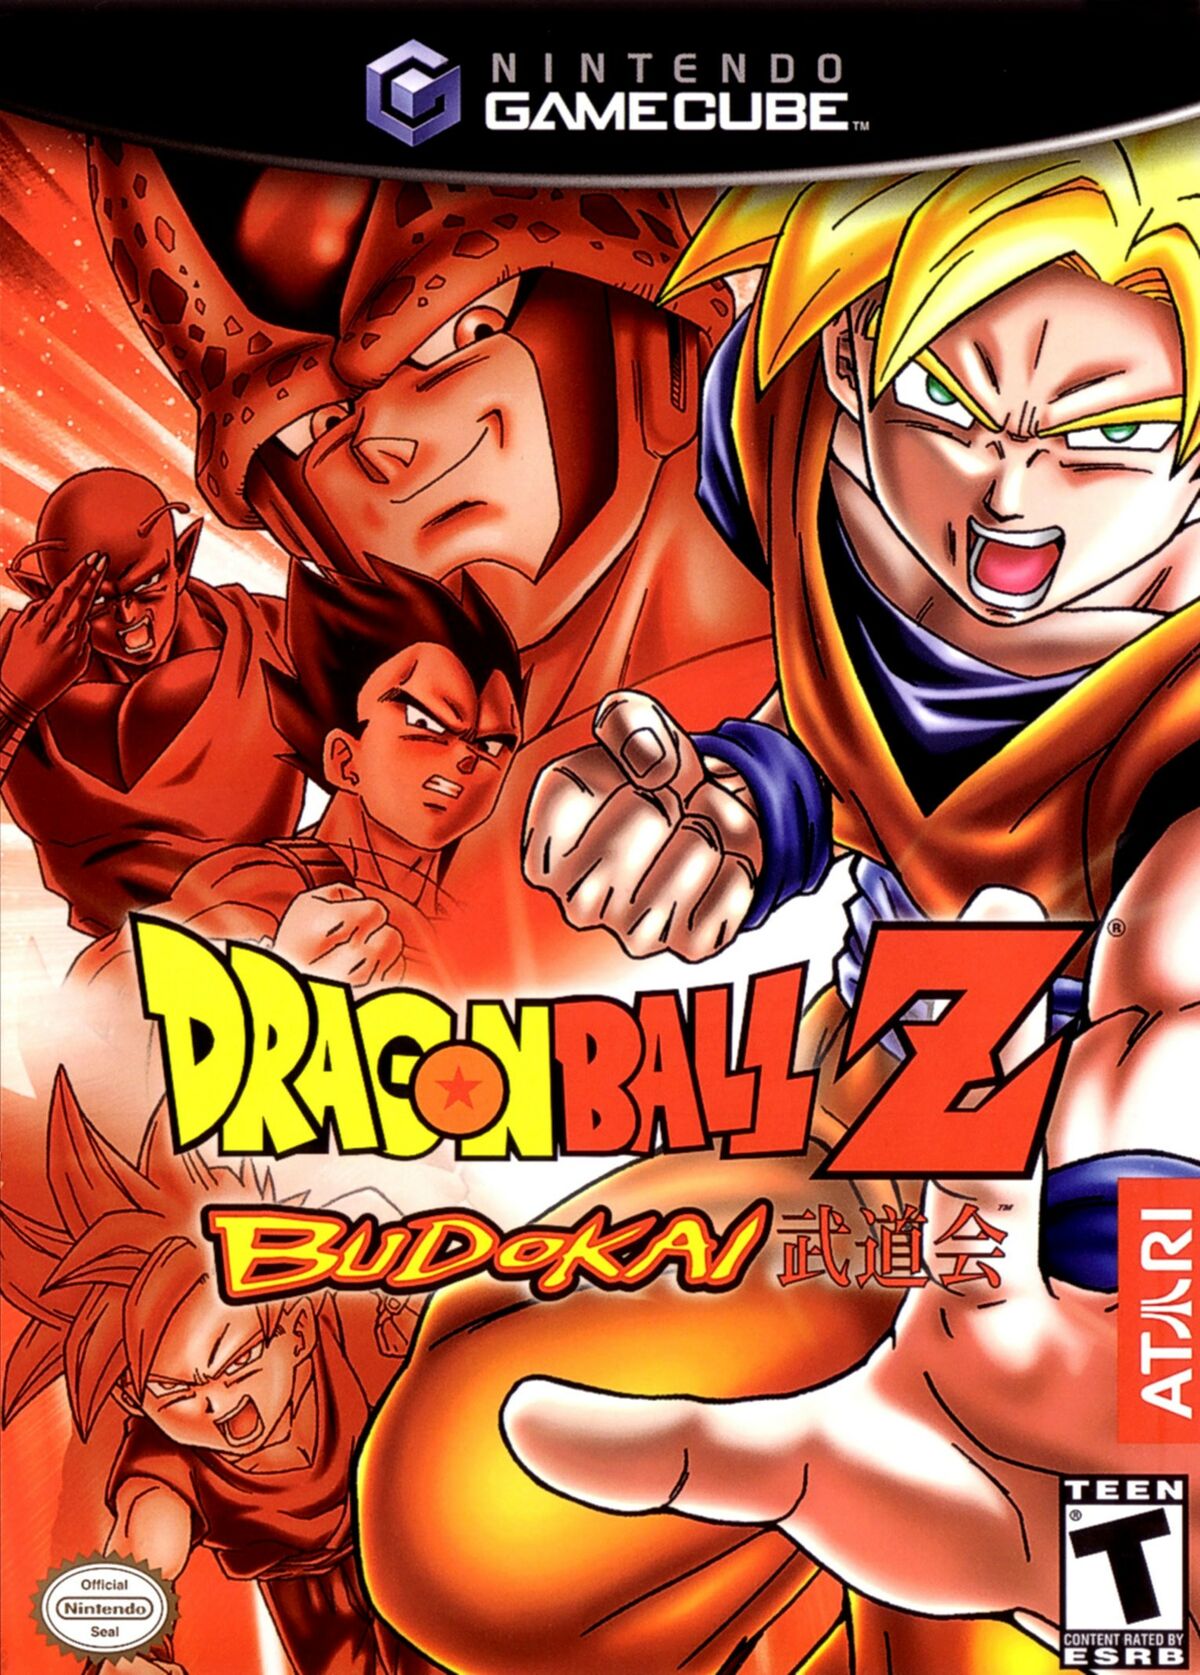 1 GB) Dragon Ball Z Budokai Tenkaichi 3 Wii Setting 30 FPS! - Dolphin MMJ  Android 